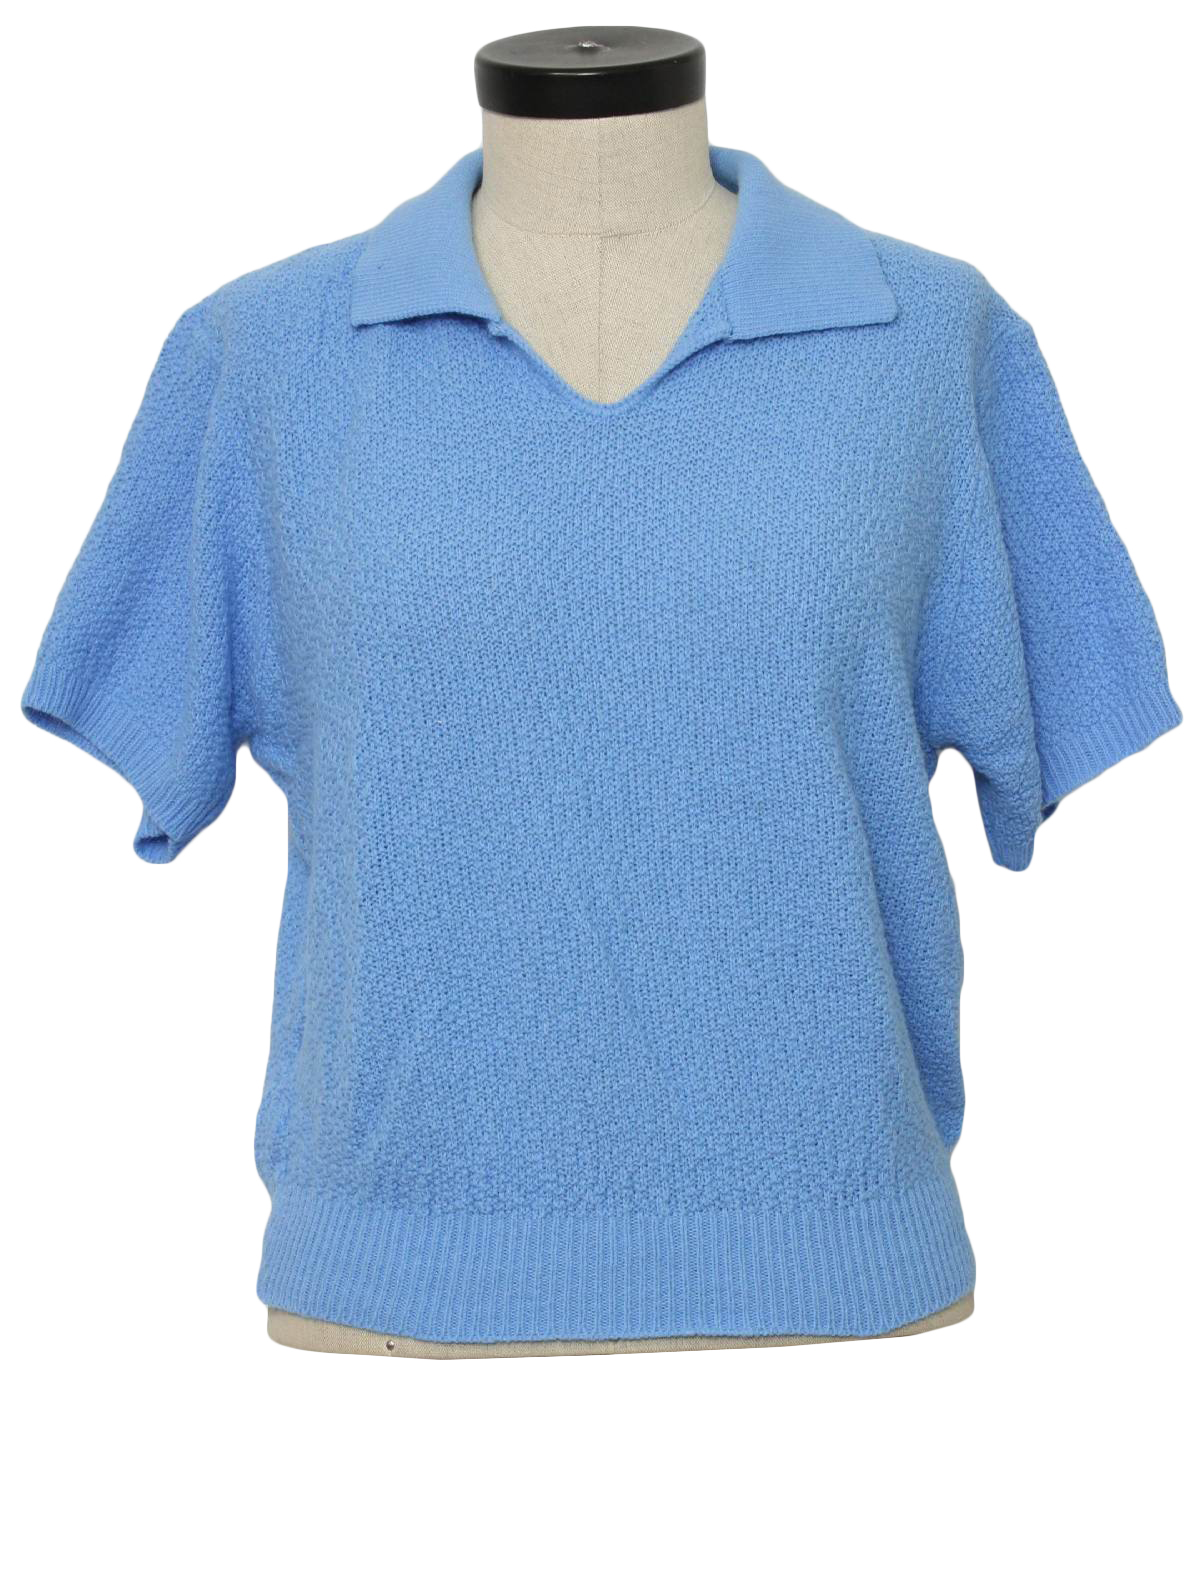 1970's Vintage Knit Shirt: 70s -no label- Womens sky blue boucle ...